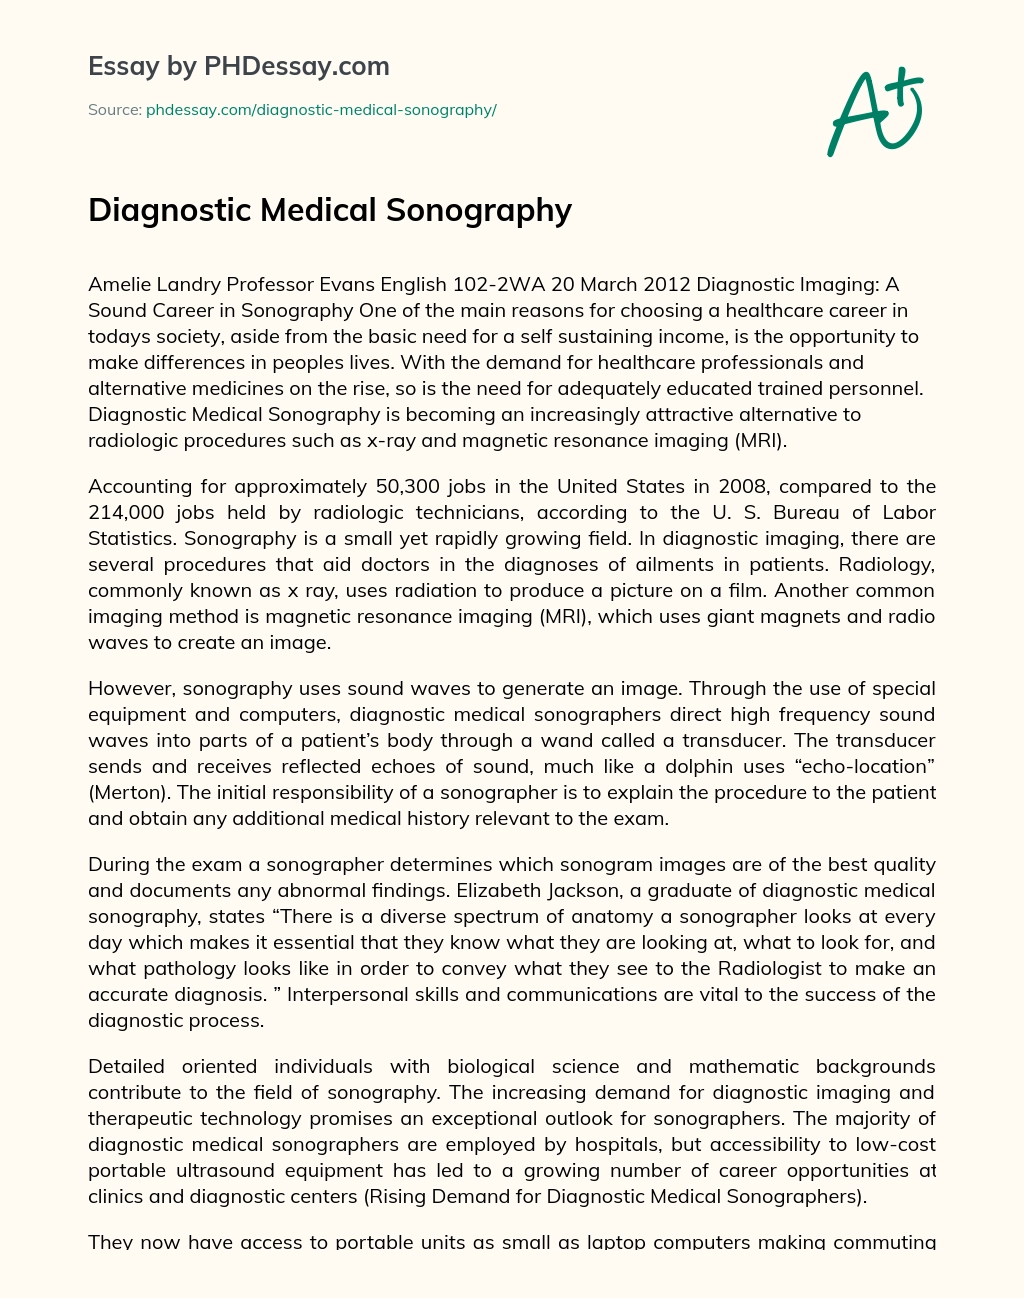 Diagnostic Medical Sonography essay